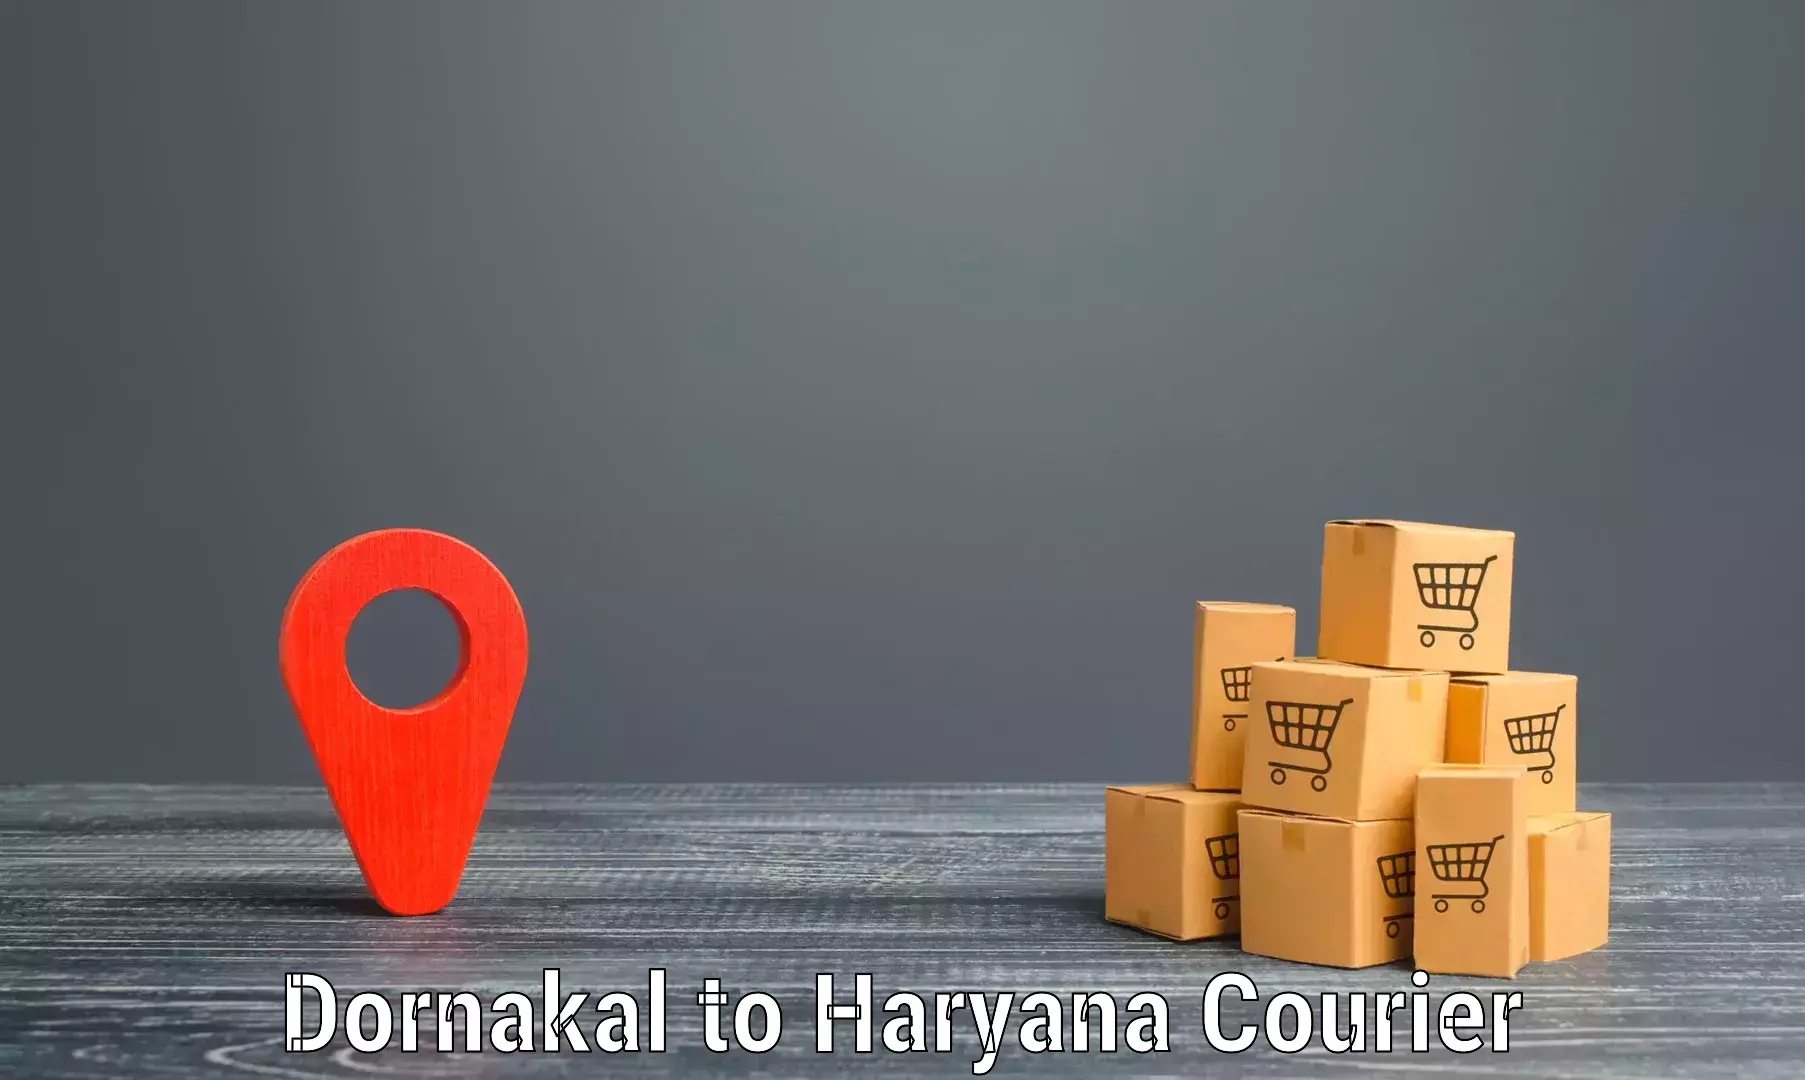 Efficient parcel service Dornakal to IIIT Sonepat